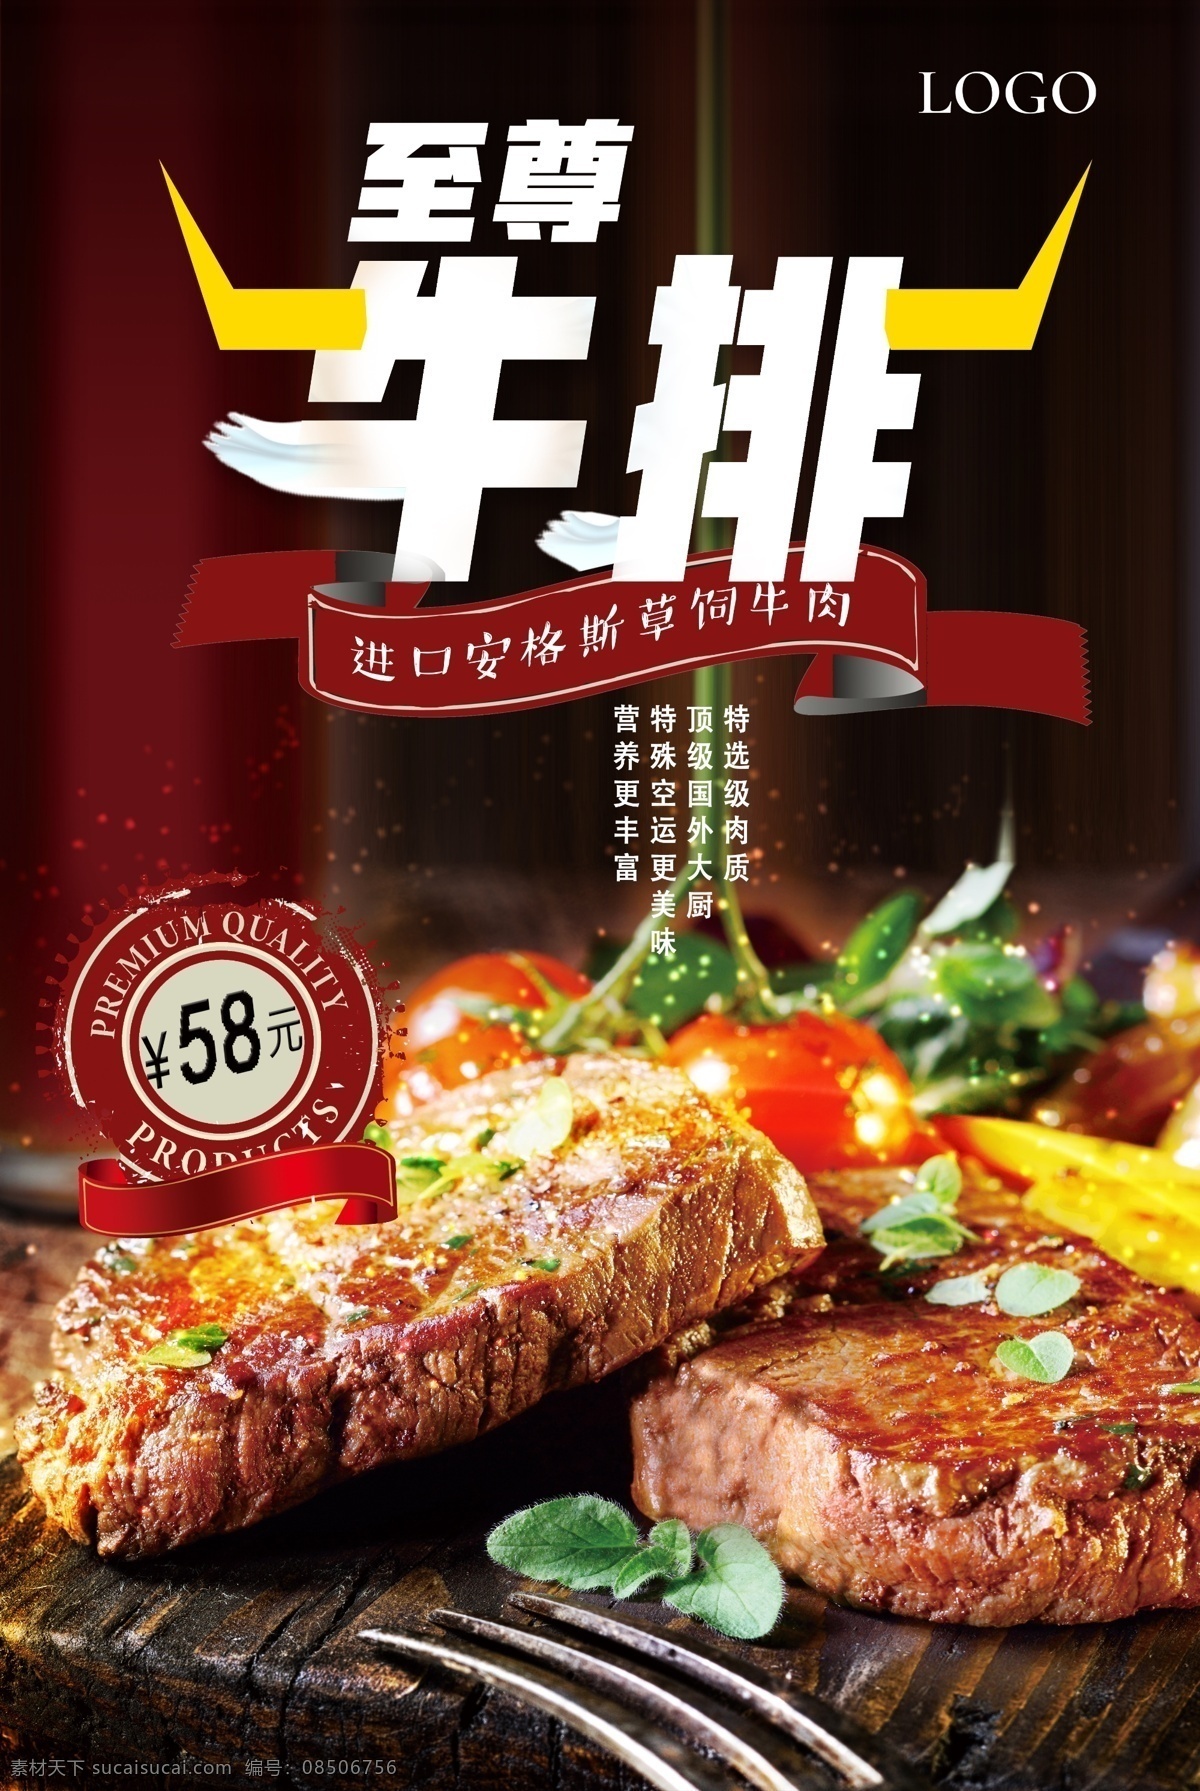 牛排 牛肉 西餐厅 海报 模版 西餐 美食 美味 铁板 西餐促销 牛排促销 美味西餐 促销 感 兴趣 免费